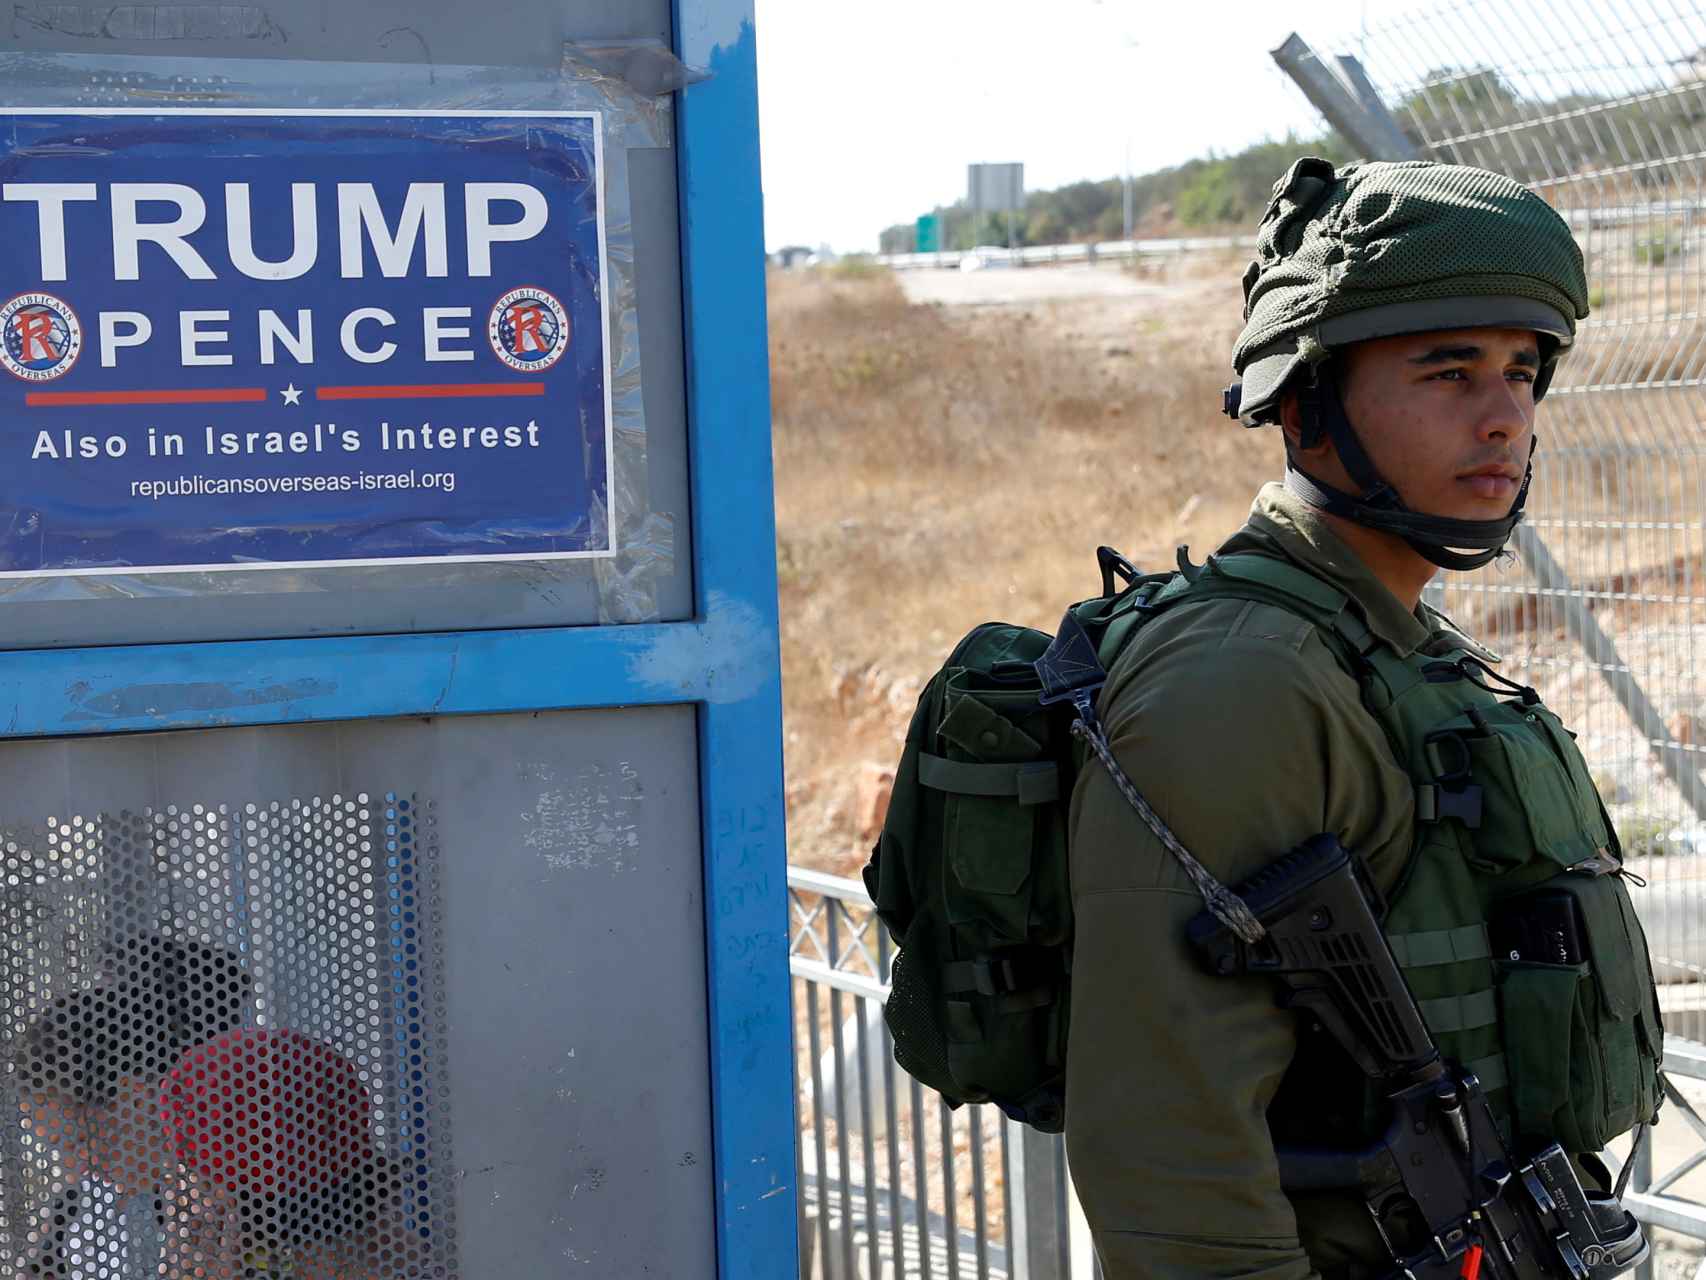 Un cartel de campaña de Trump, en un control cerca de una colonia judía en Cisjordania.